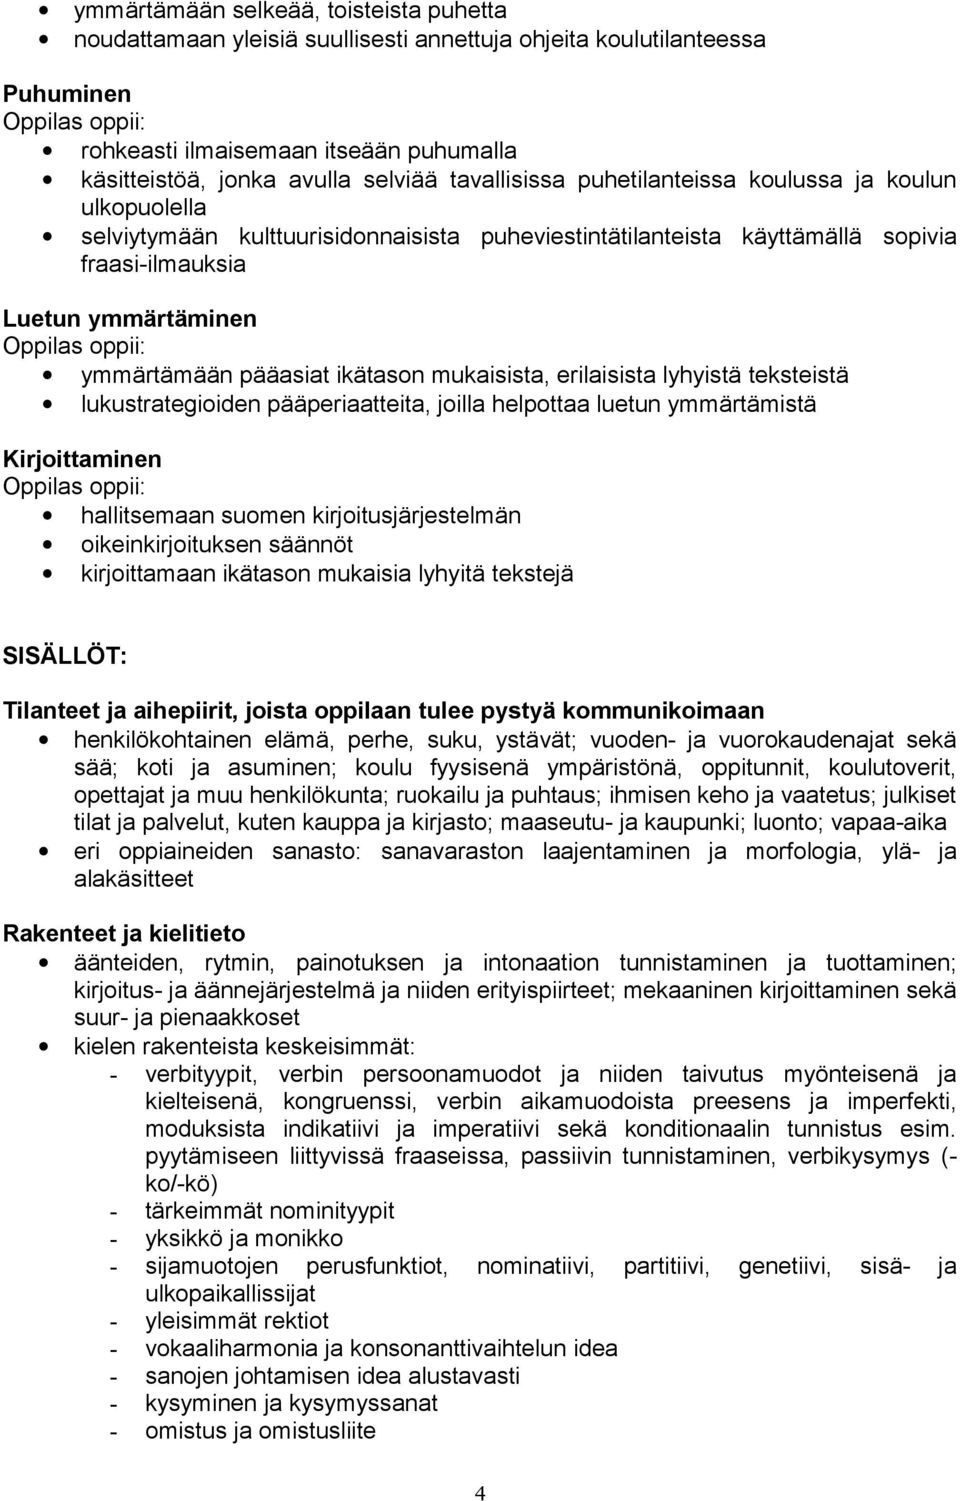 ikätason mukaisista, erilaisista lyhyistä teksteistä lukustrategioiden pääperiaatteita, joilla helpottaa luetun ymmärtämistä Kirjoittaminen hallitsemaan suomen kirjoitusjärjestelmän